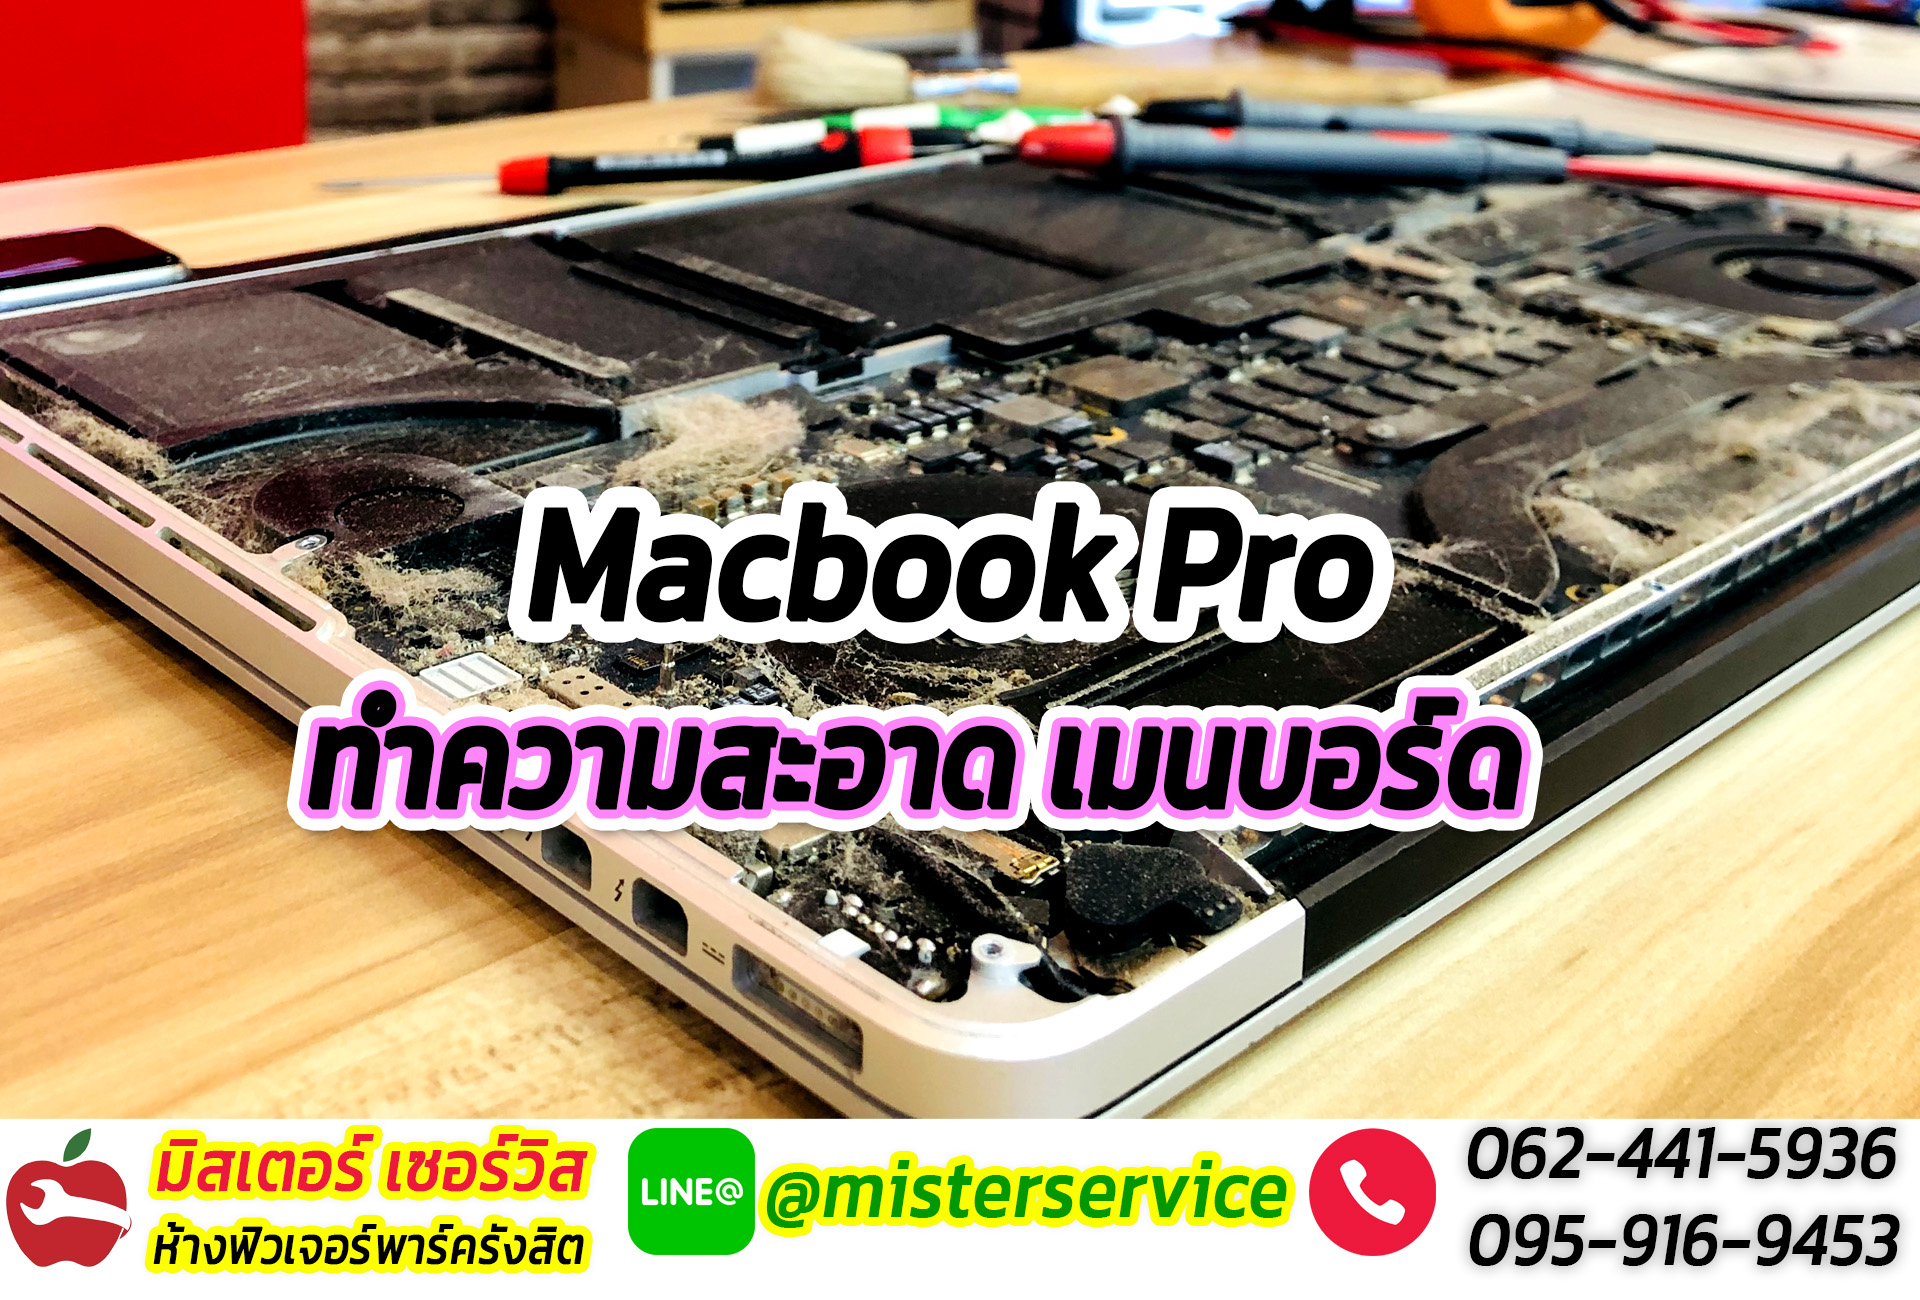 ร้านซ่อม Macbook iMac ดีดี ย่านรังสิต